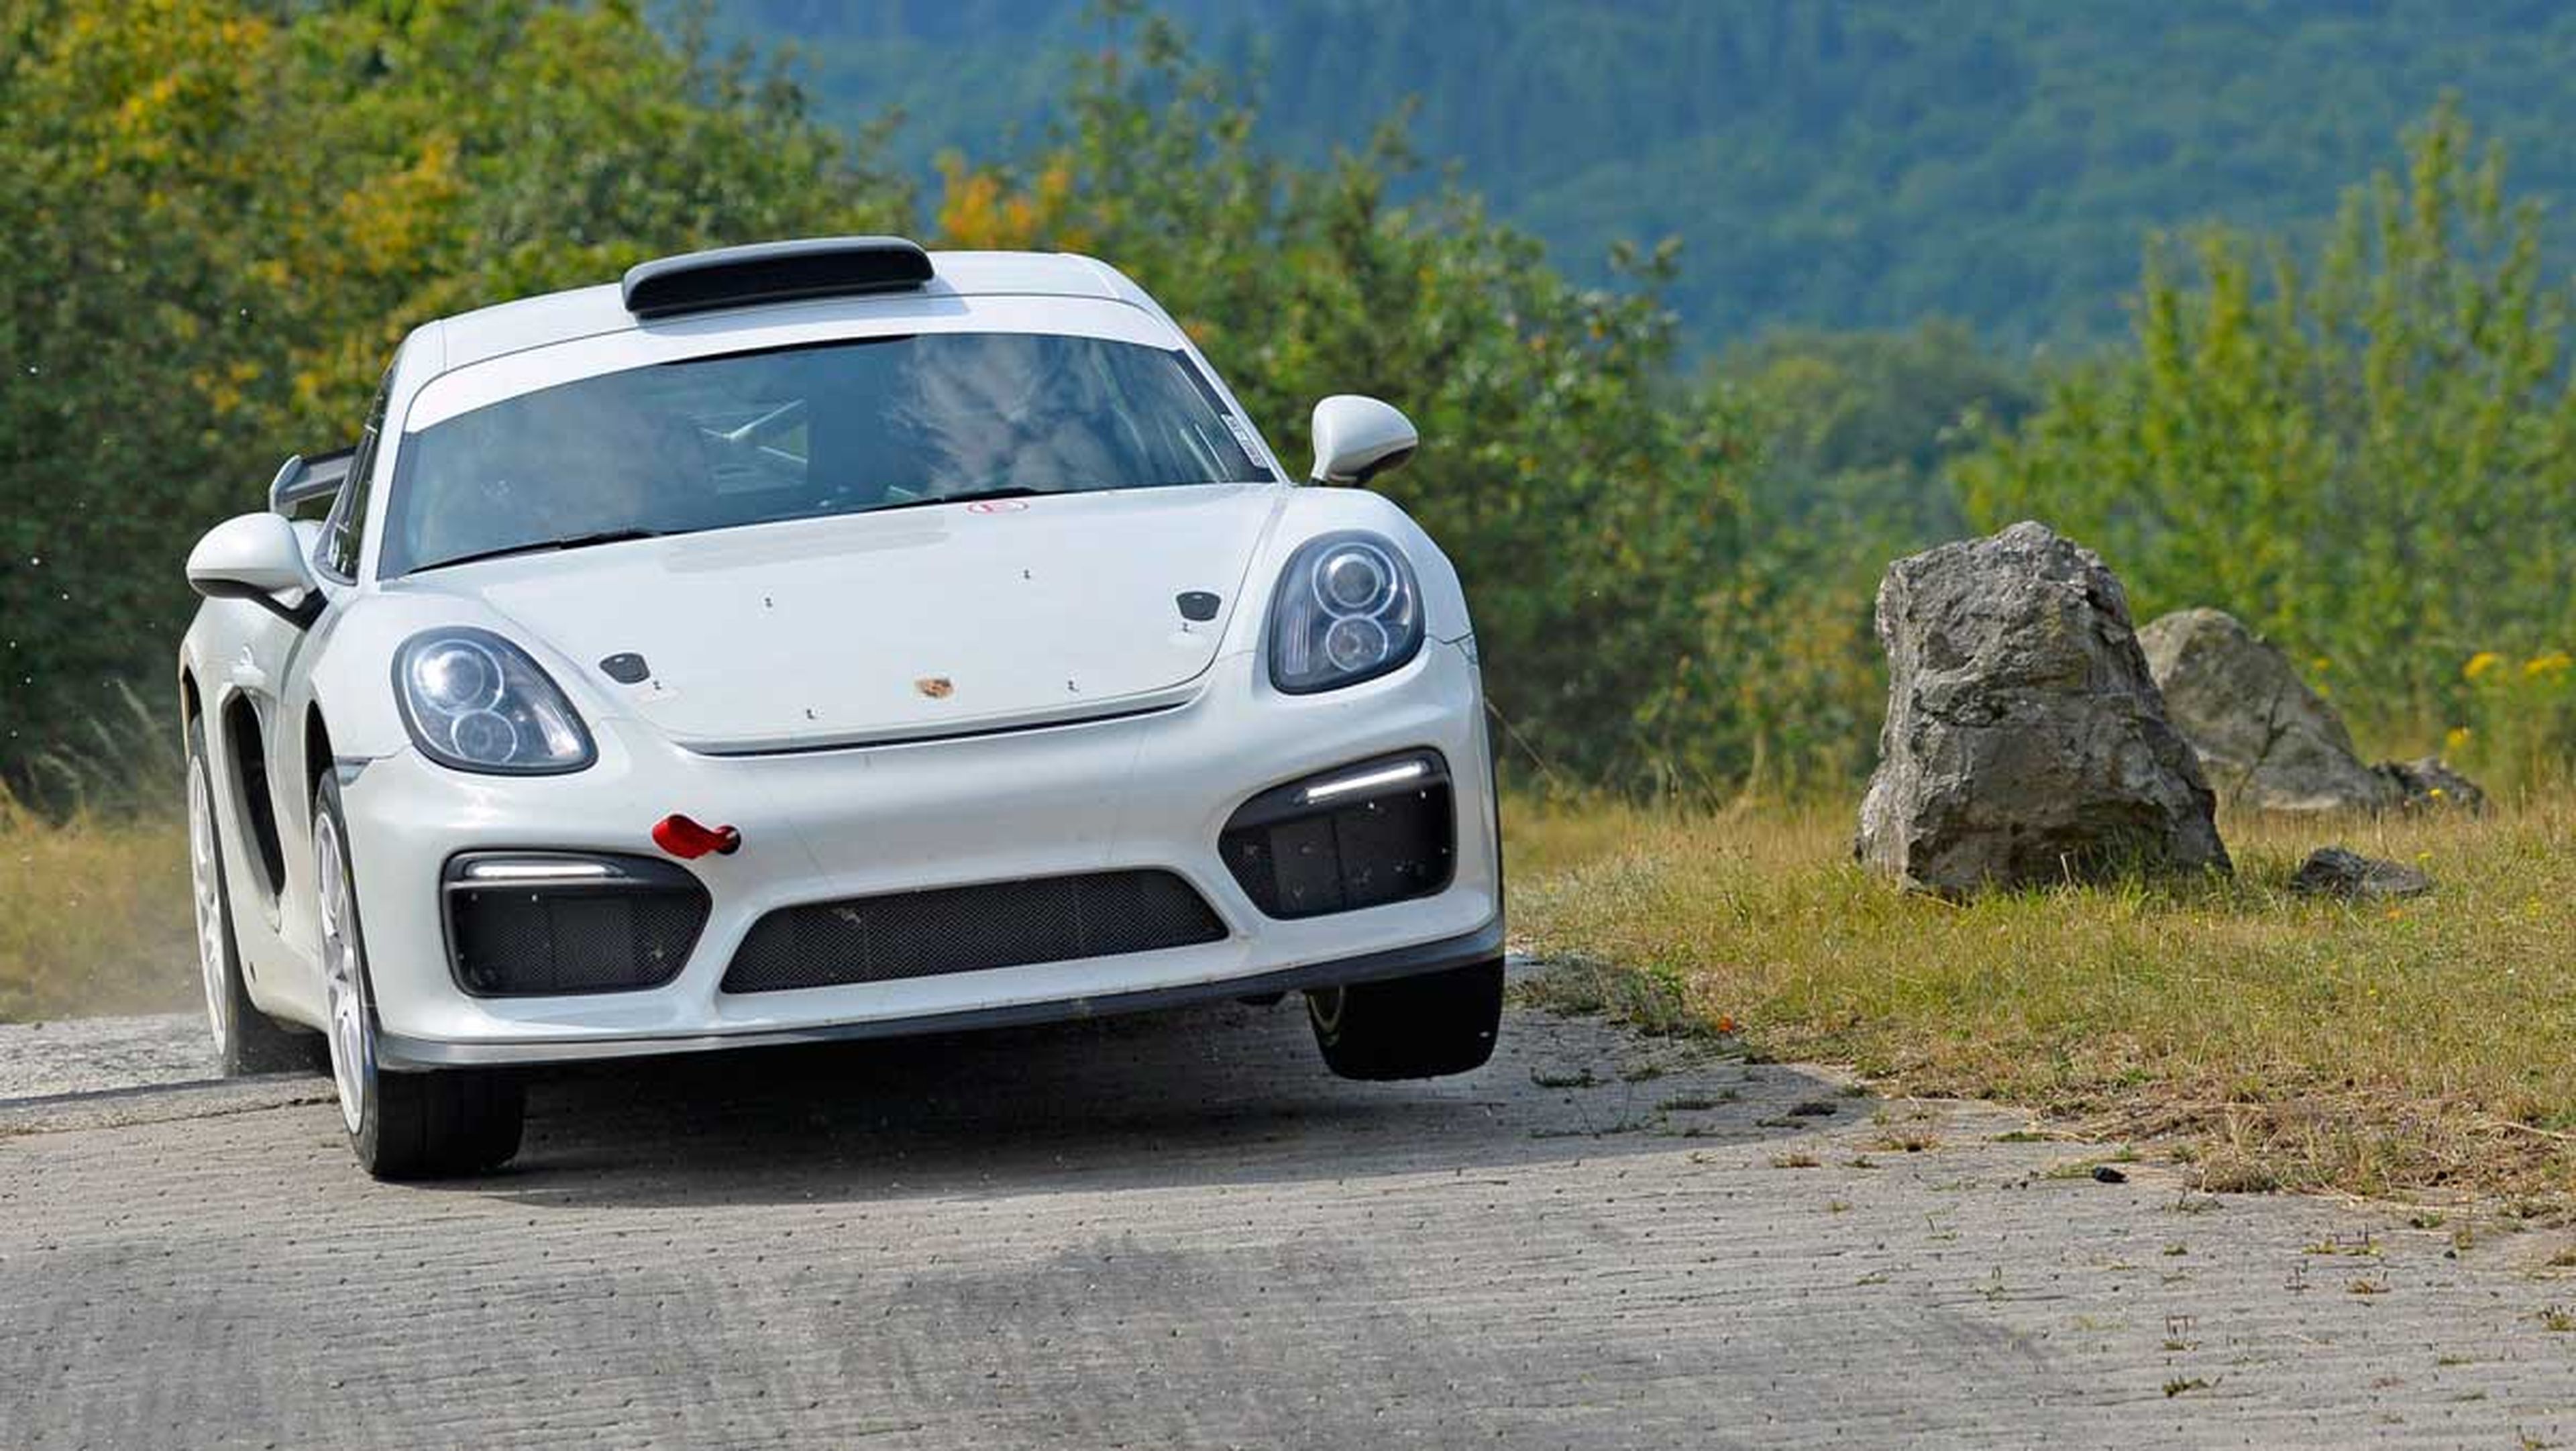 Porsche Cayman GT4 Clubsport Rallye concept